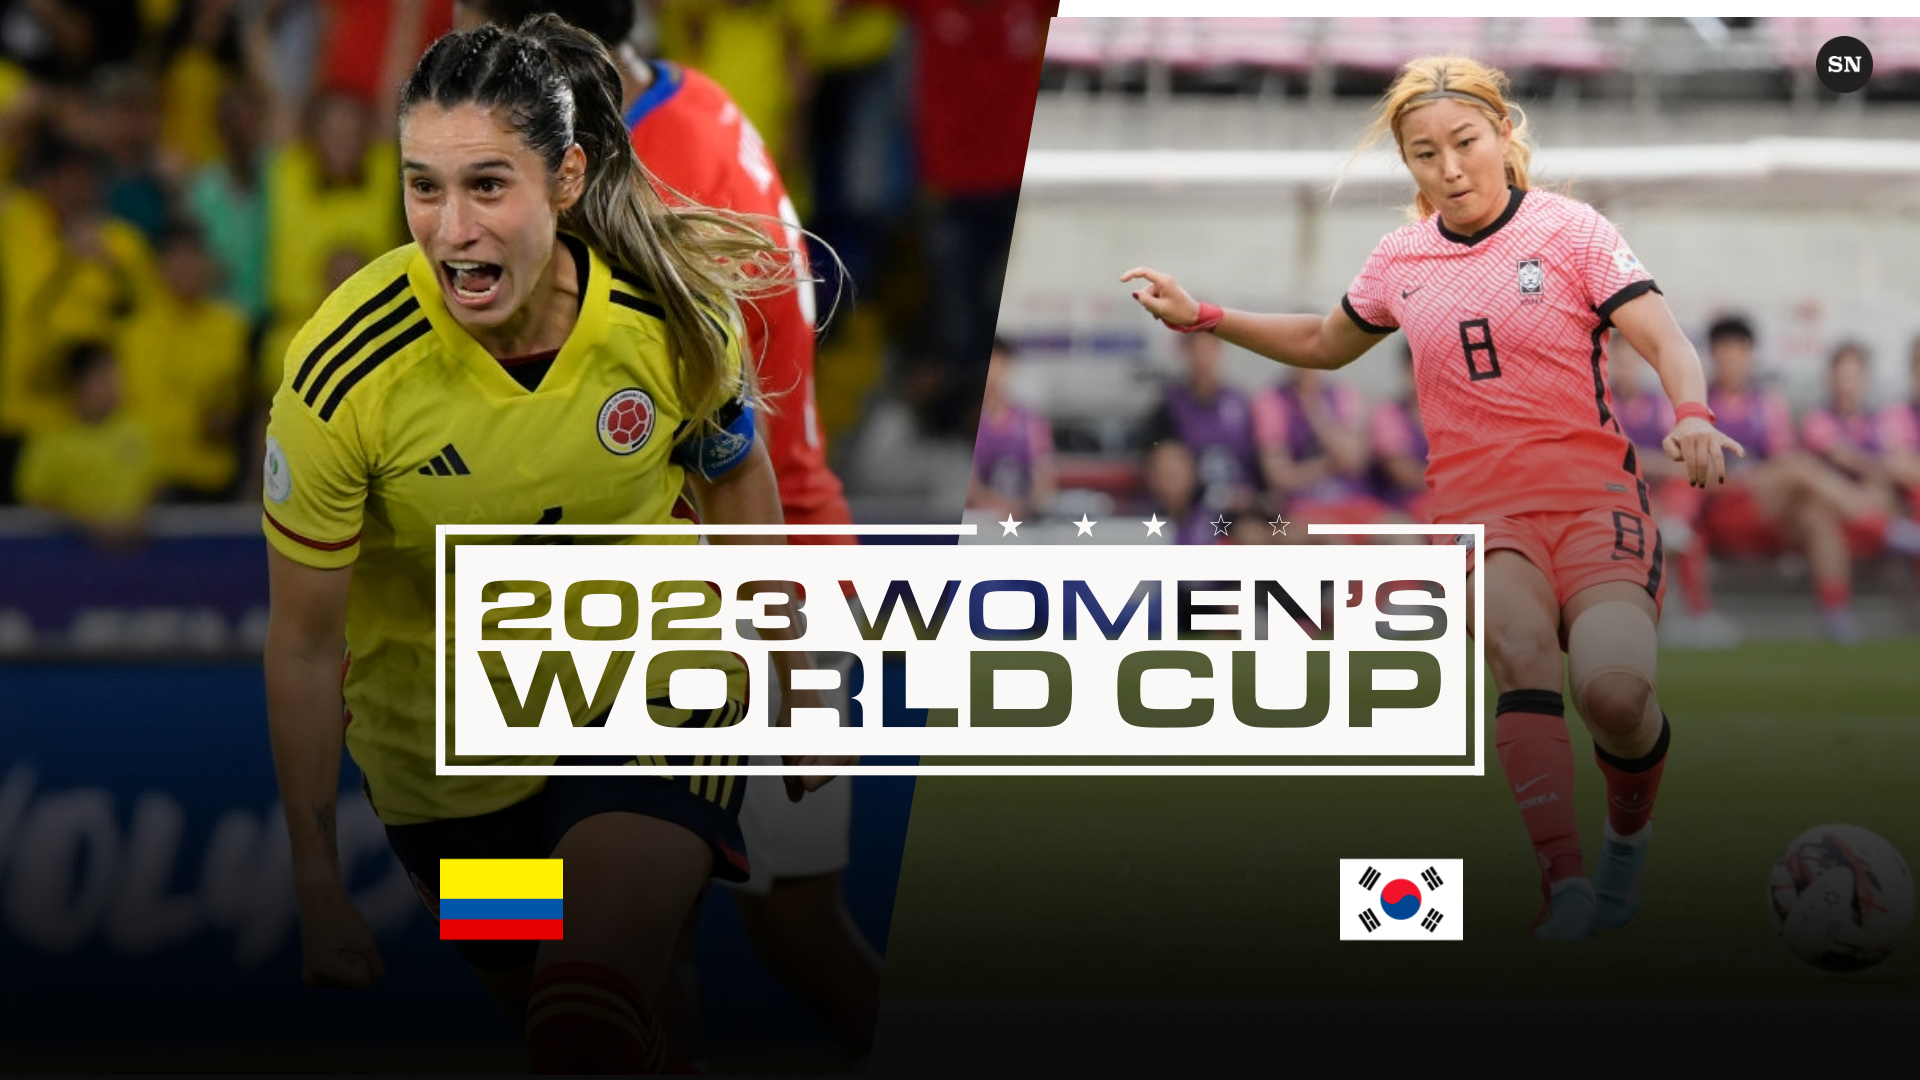 ¿A qué hora juega Colombia en el Mundial Femenino 2023 hoy? Horario, TV